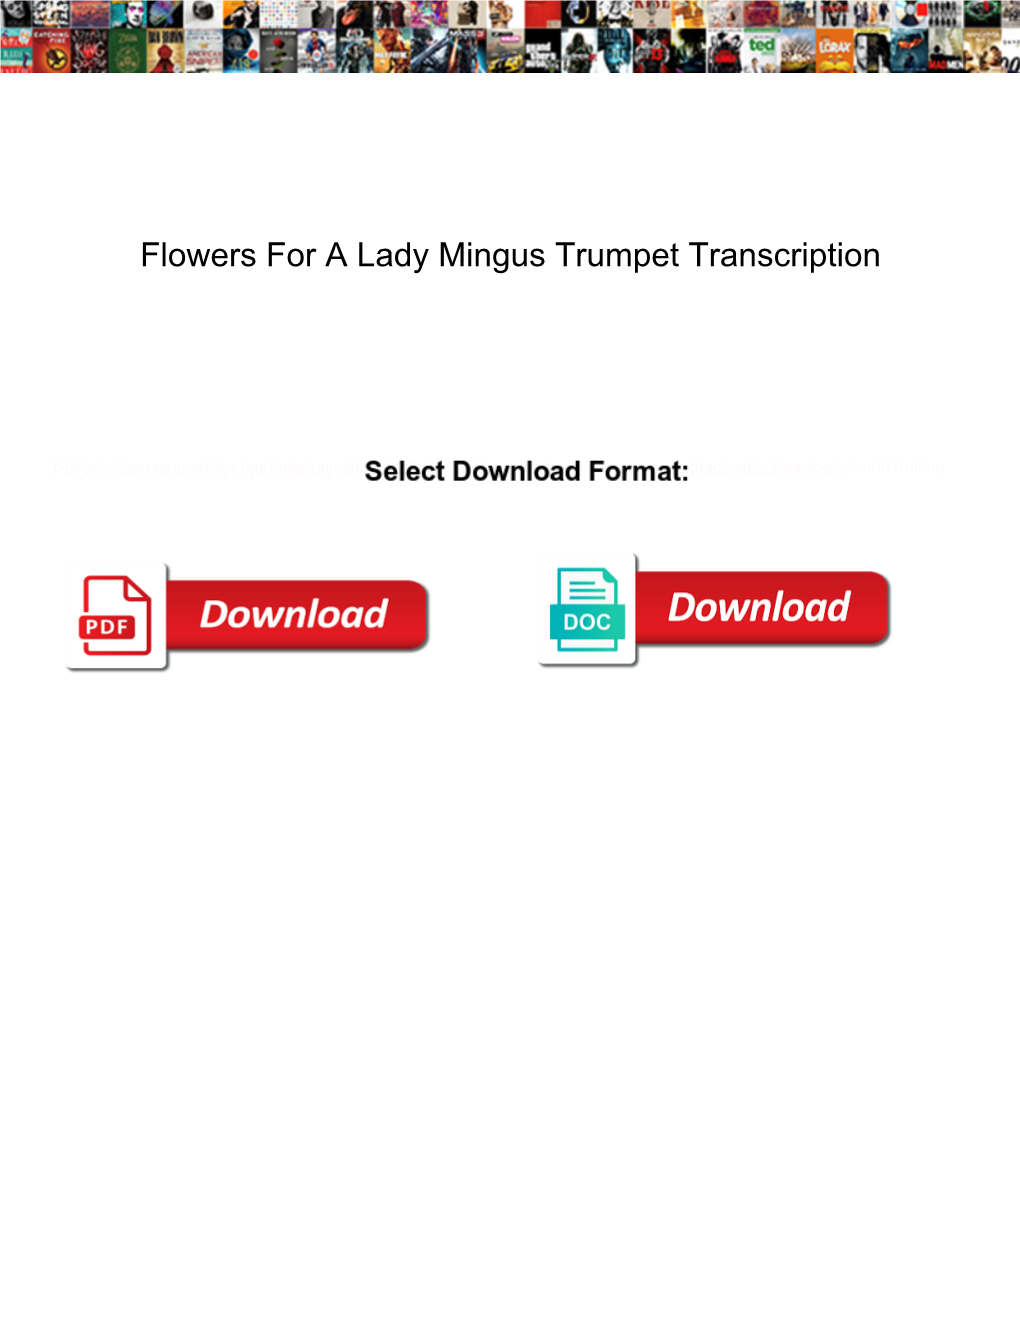 Flowers for a Lady Mingus Trumpet Transcription